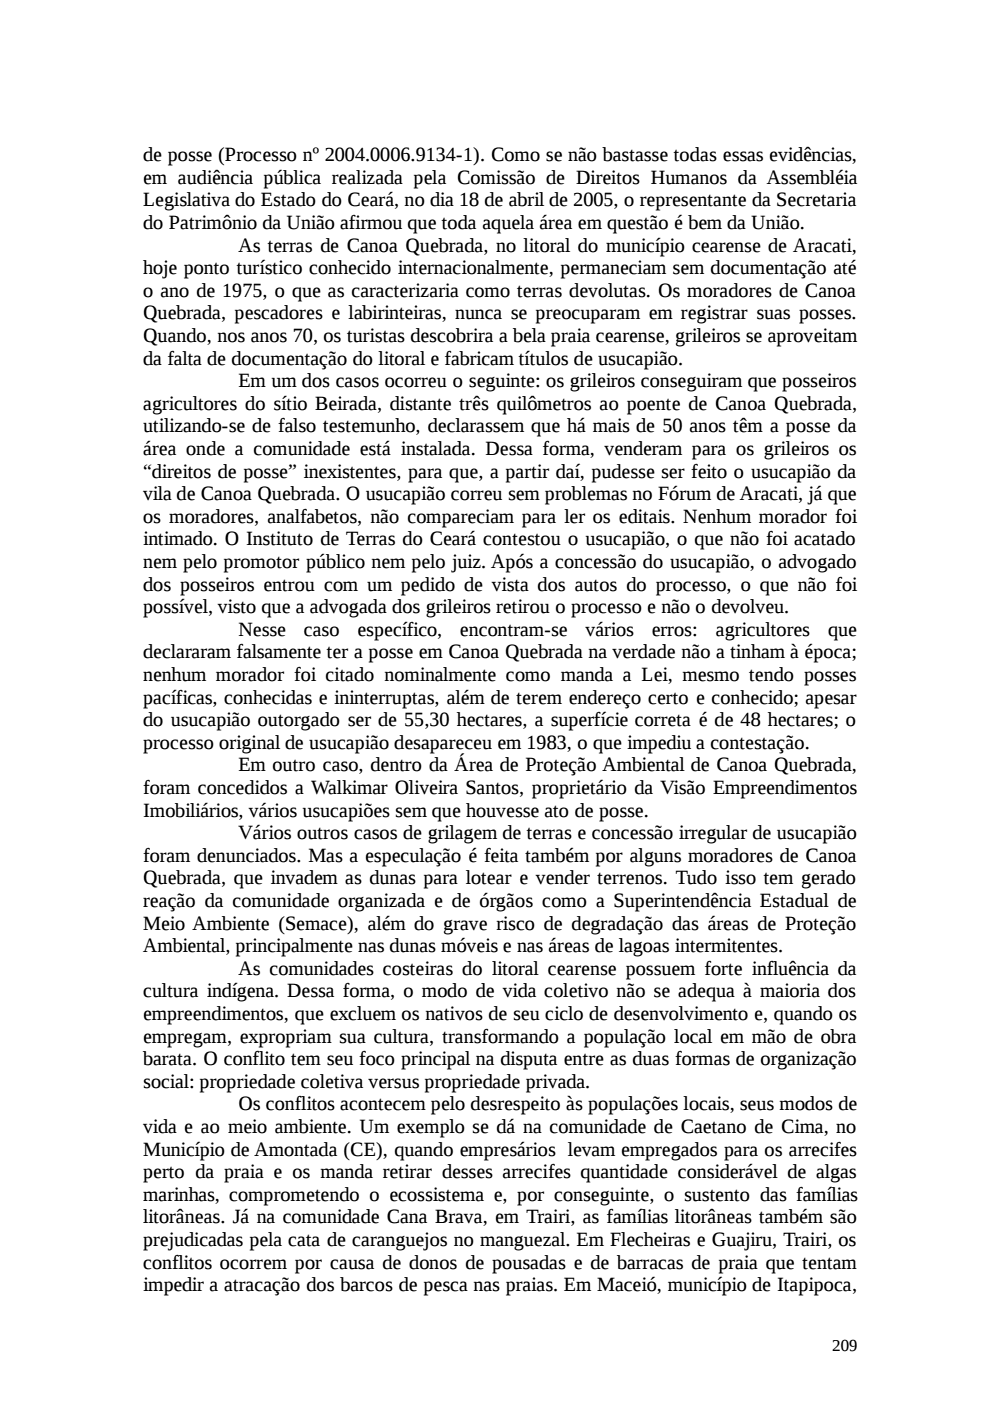 Page 209 from Relatório final da comissão